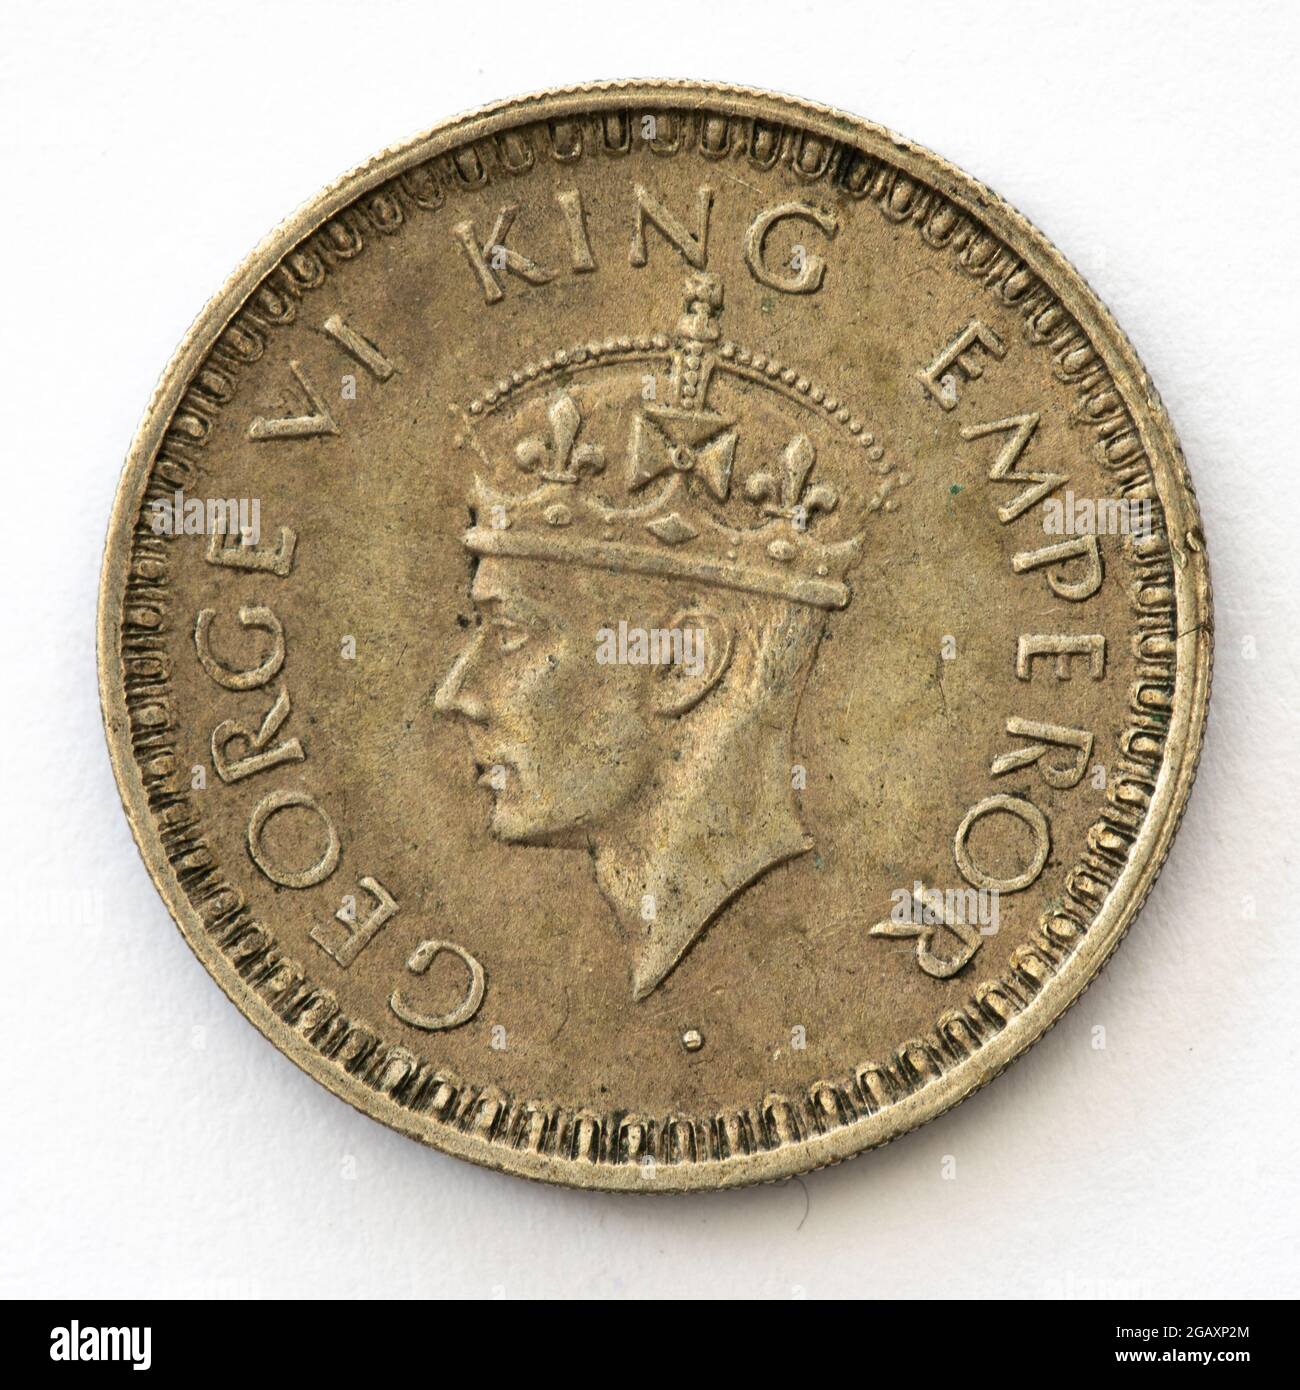 Moneta indiana pre-indipendenza una rupia con George 6th (1945) incisa da Percy Metcalfe. Coniò alla menta di Lahore. Foto Stock